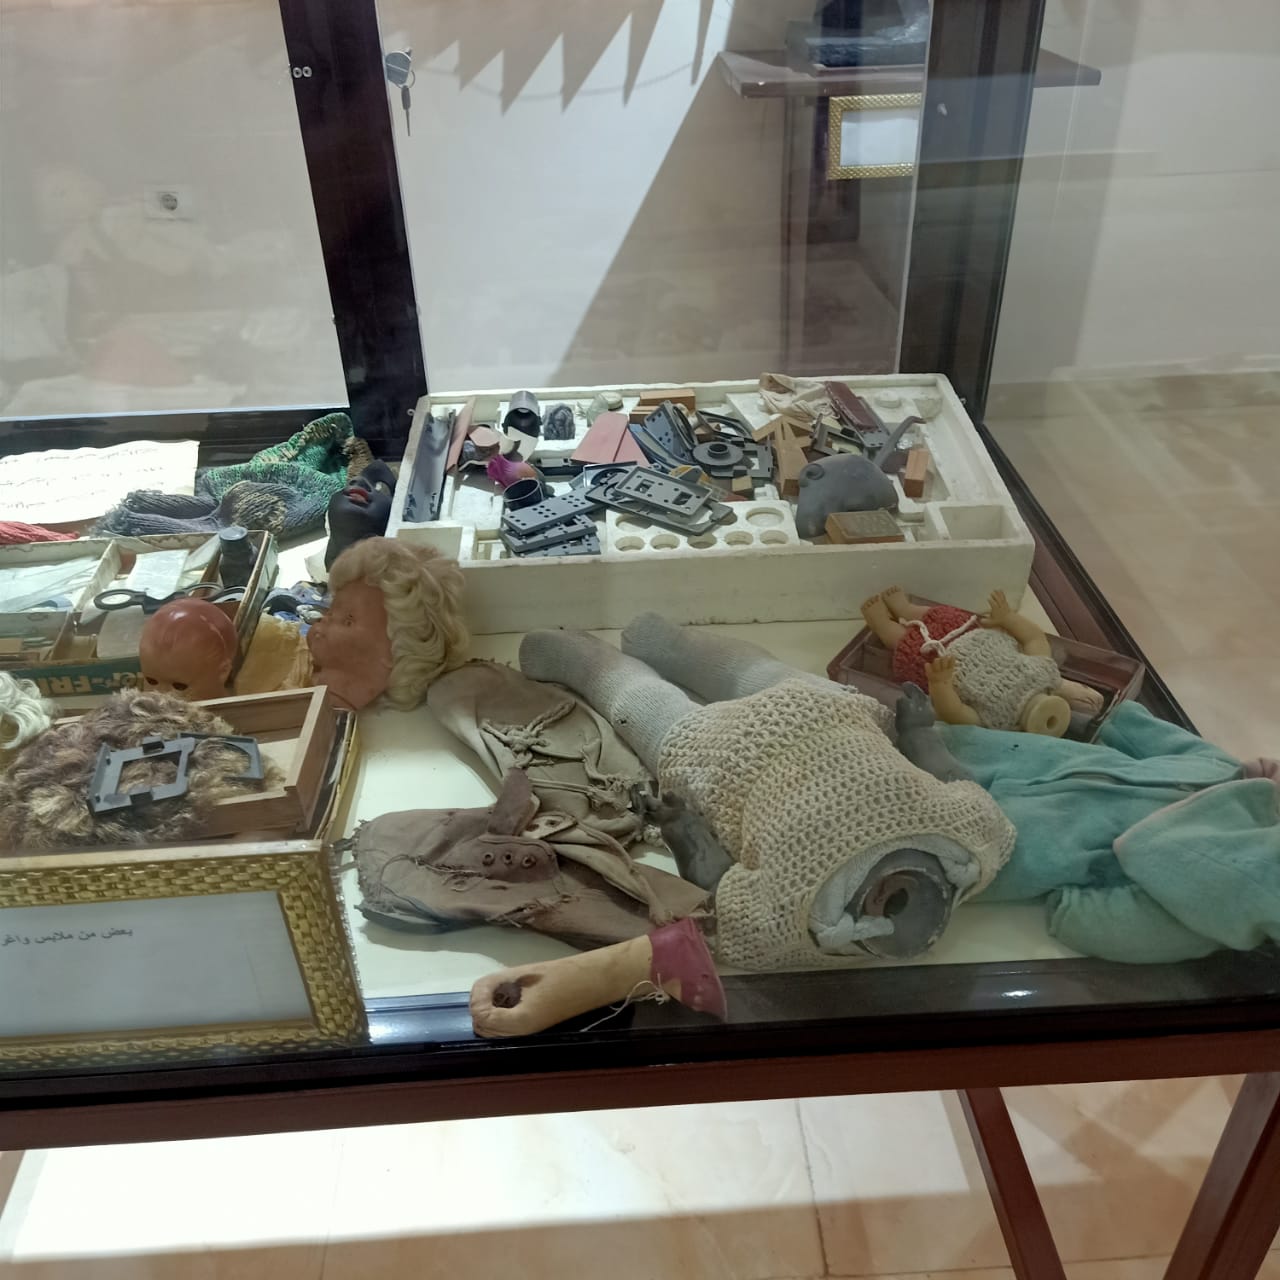  كتب وكراسات وملابس شهداء مذبحة بحر البقر بمتحف المدرسة (9)